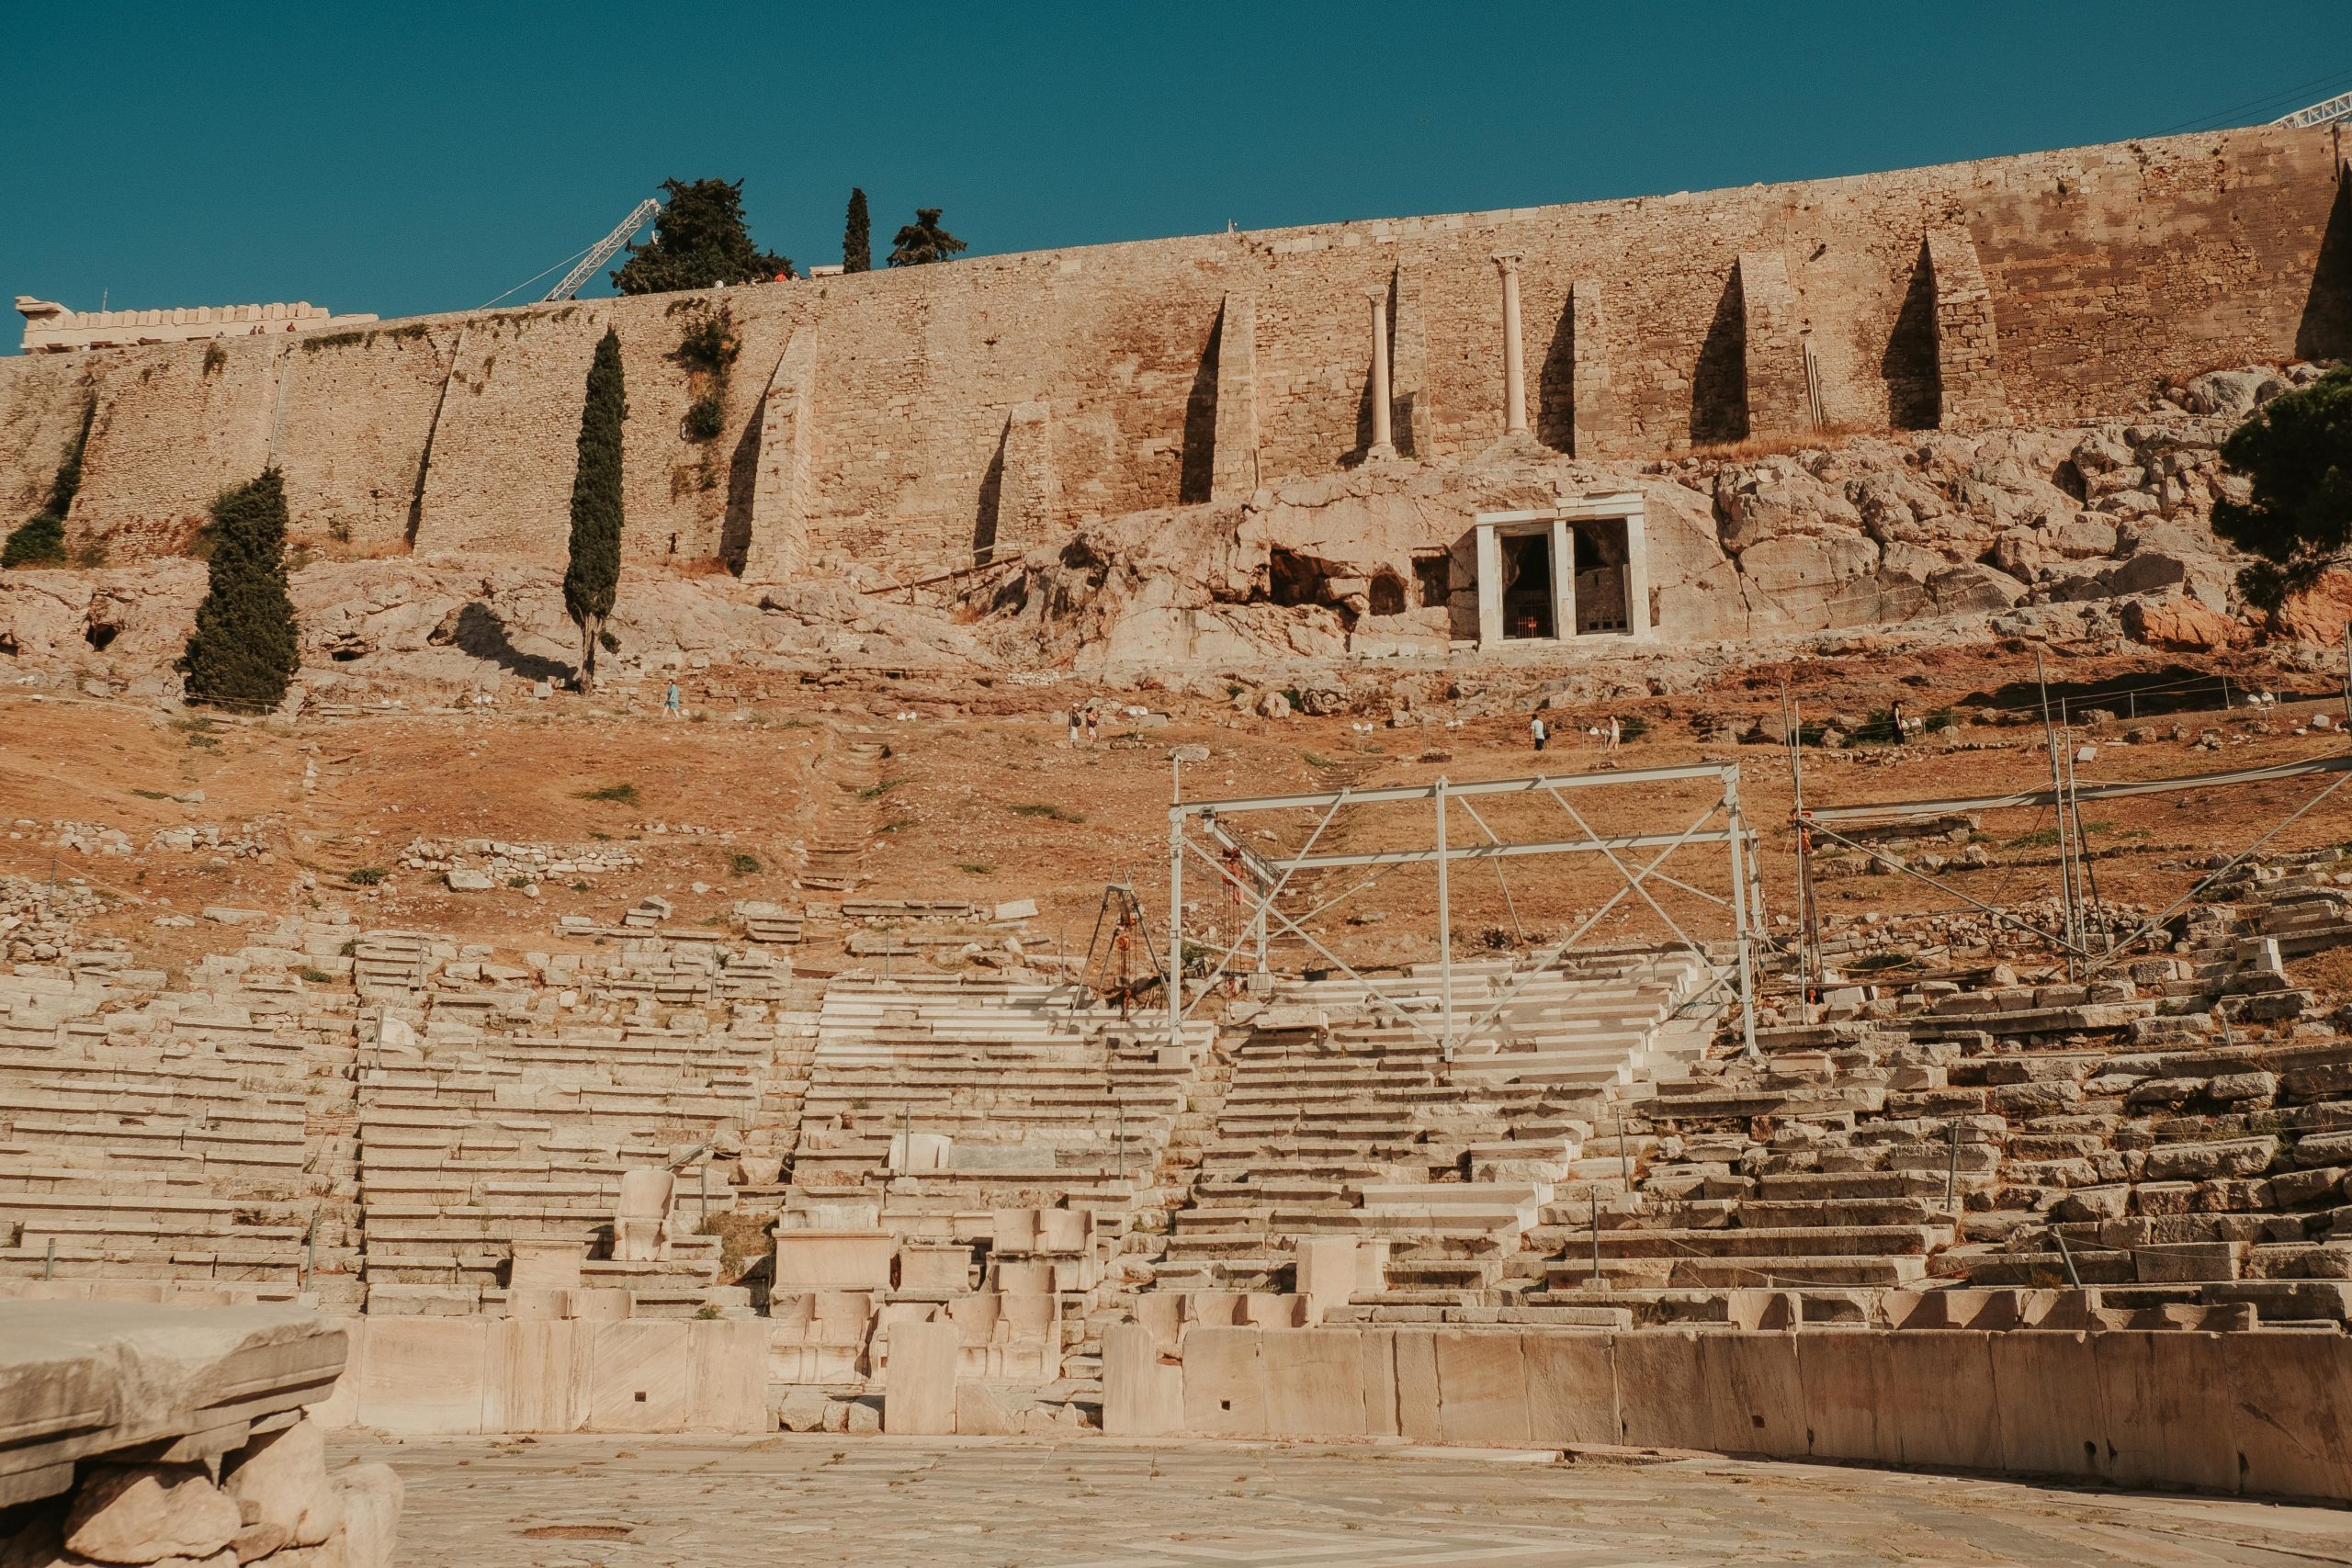 theatre of Dionysus